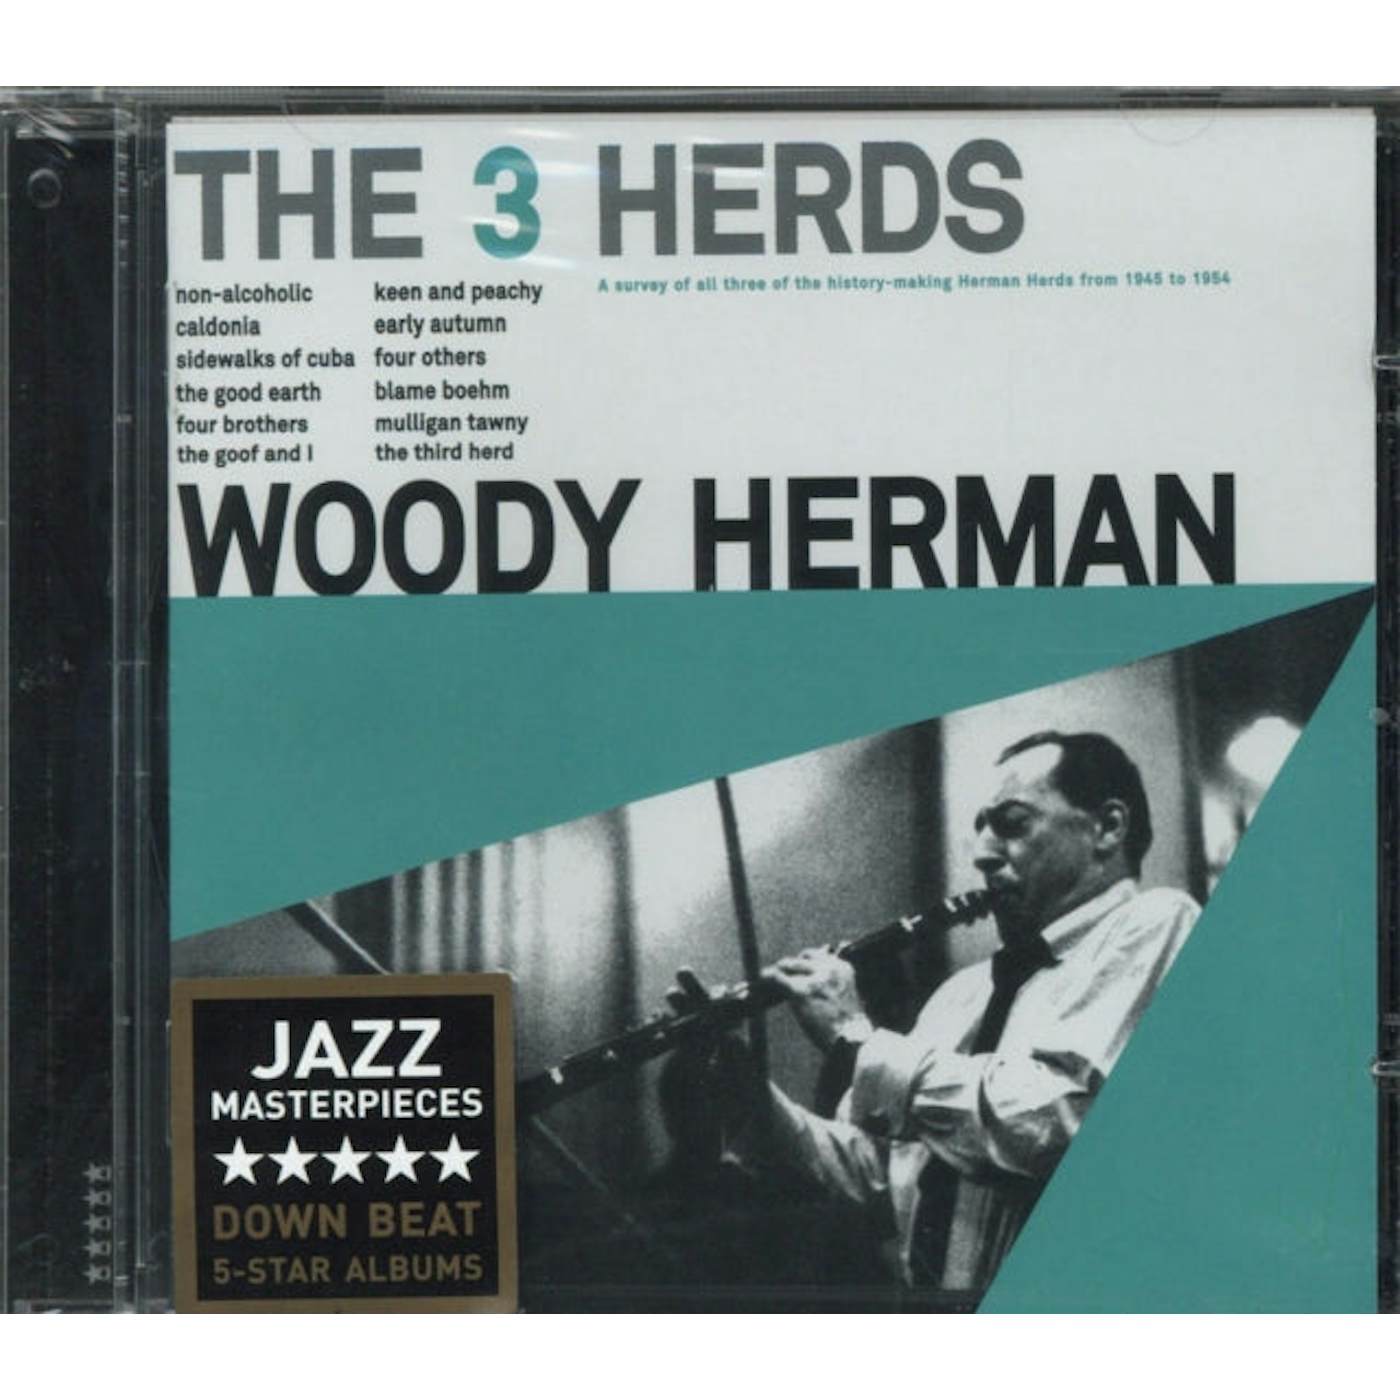 Woody Herman CD - The 3 Herds